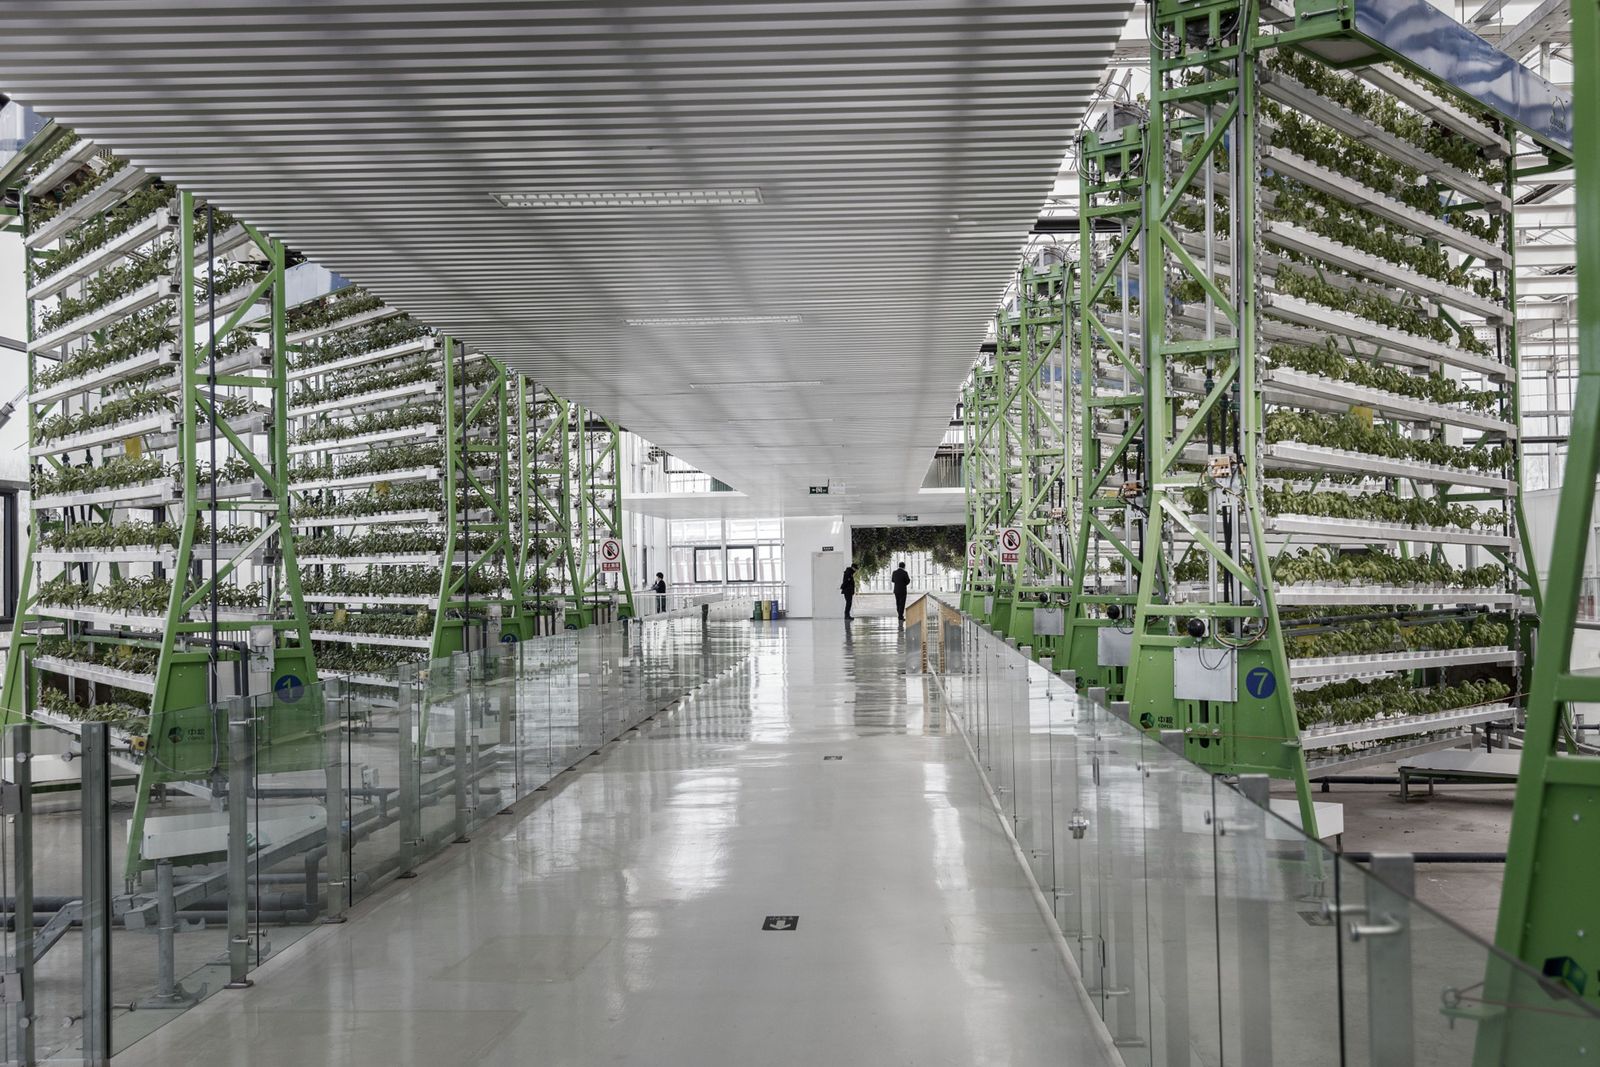 نباتات تنمو على أرفف زراعية عمودية في مزرعة تديرها شركة تكنولوجيا بضواحي بكين - 20 فبراير 2017 - Bloomberg